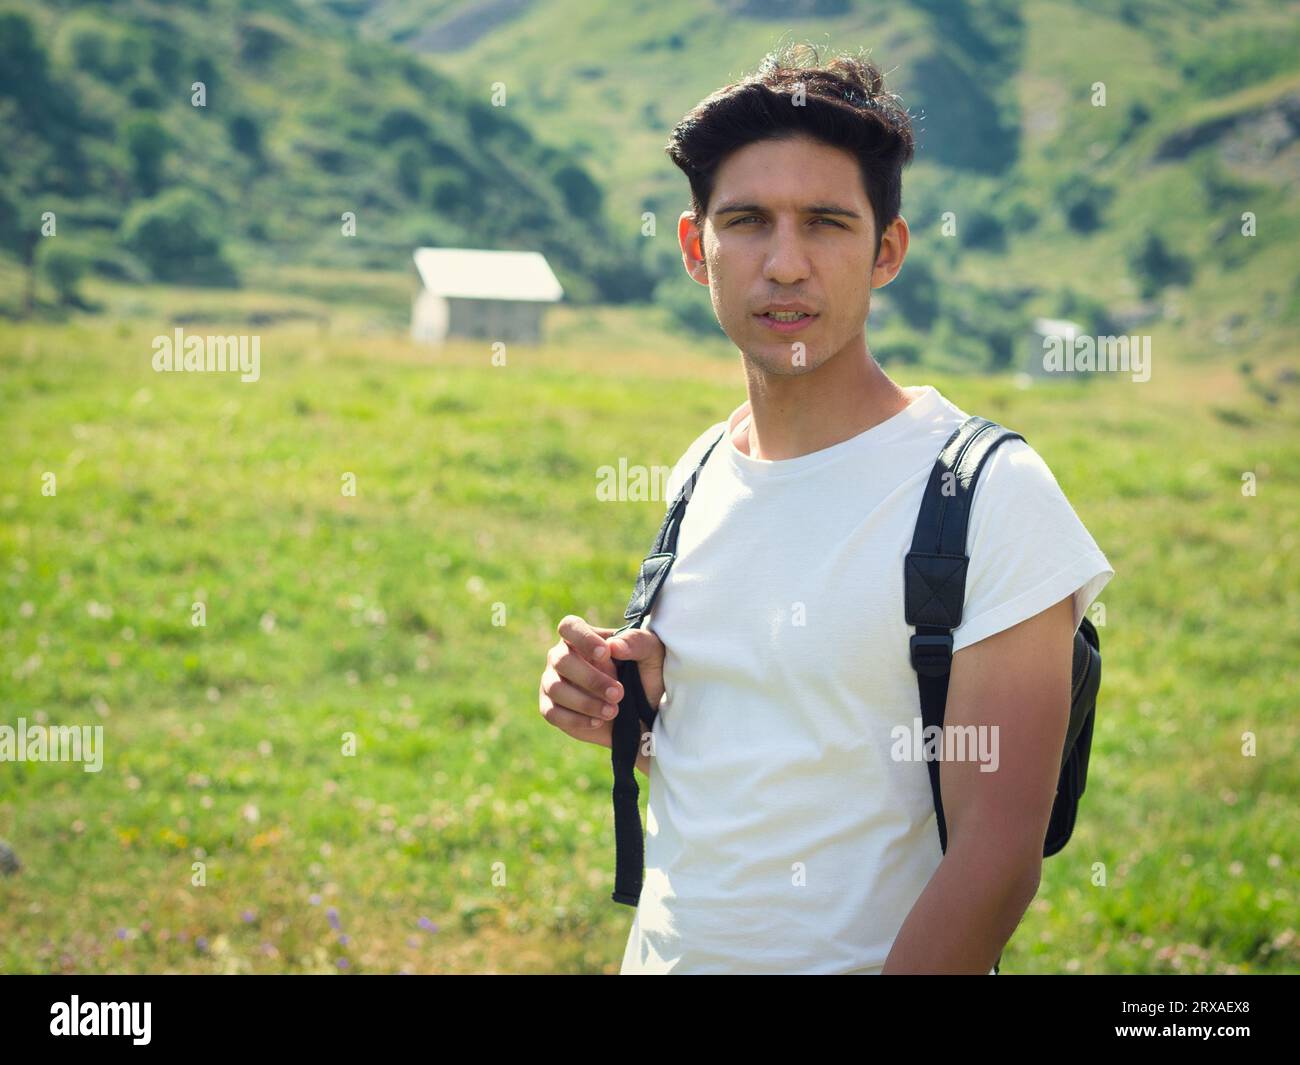 Un uomo con uno zaino in piedi in un campo. Foto di un giovane uomo attraente in piedi in un campo con uno zaino durante un'avventura escursionistica Foto Stock